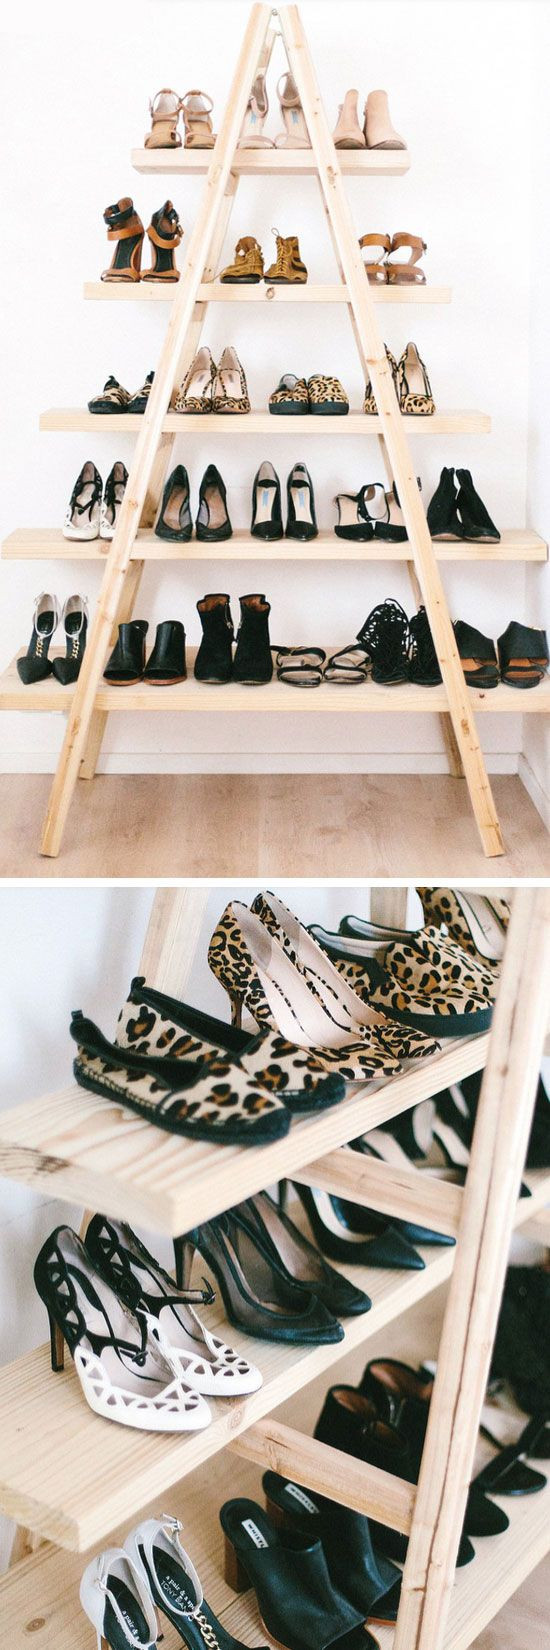 DIY Closet Shoe Organizer
 36 best Organizing Your Life images on Pinterest